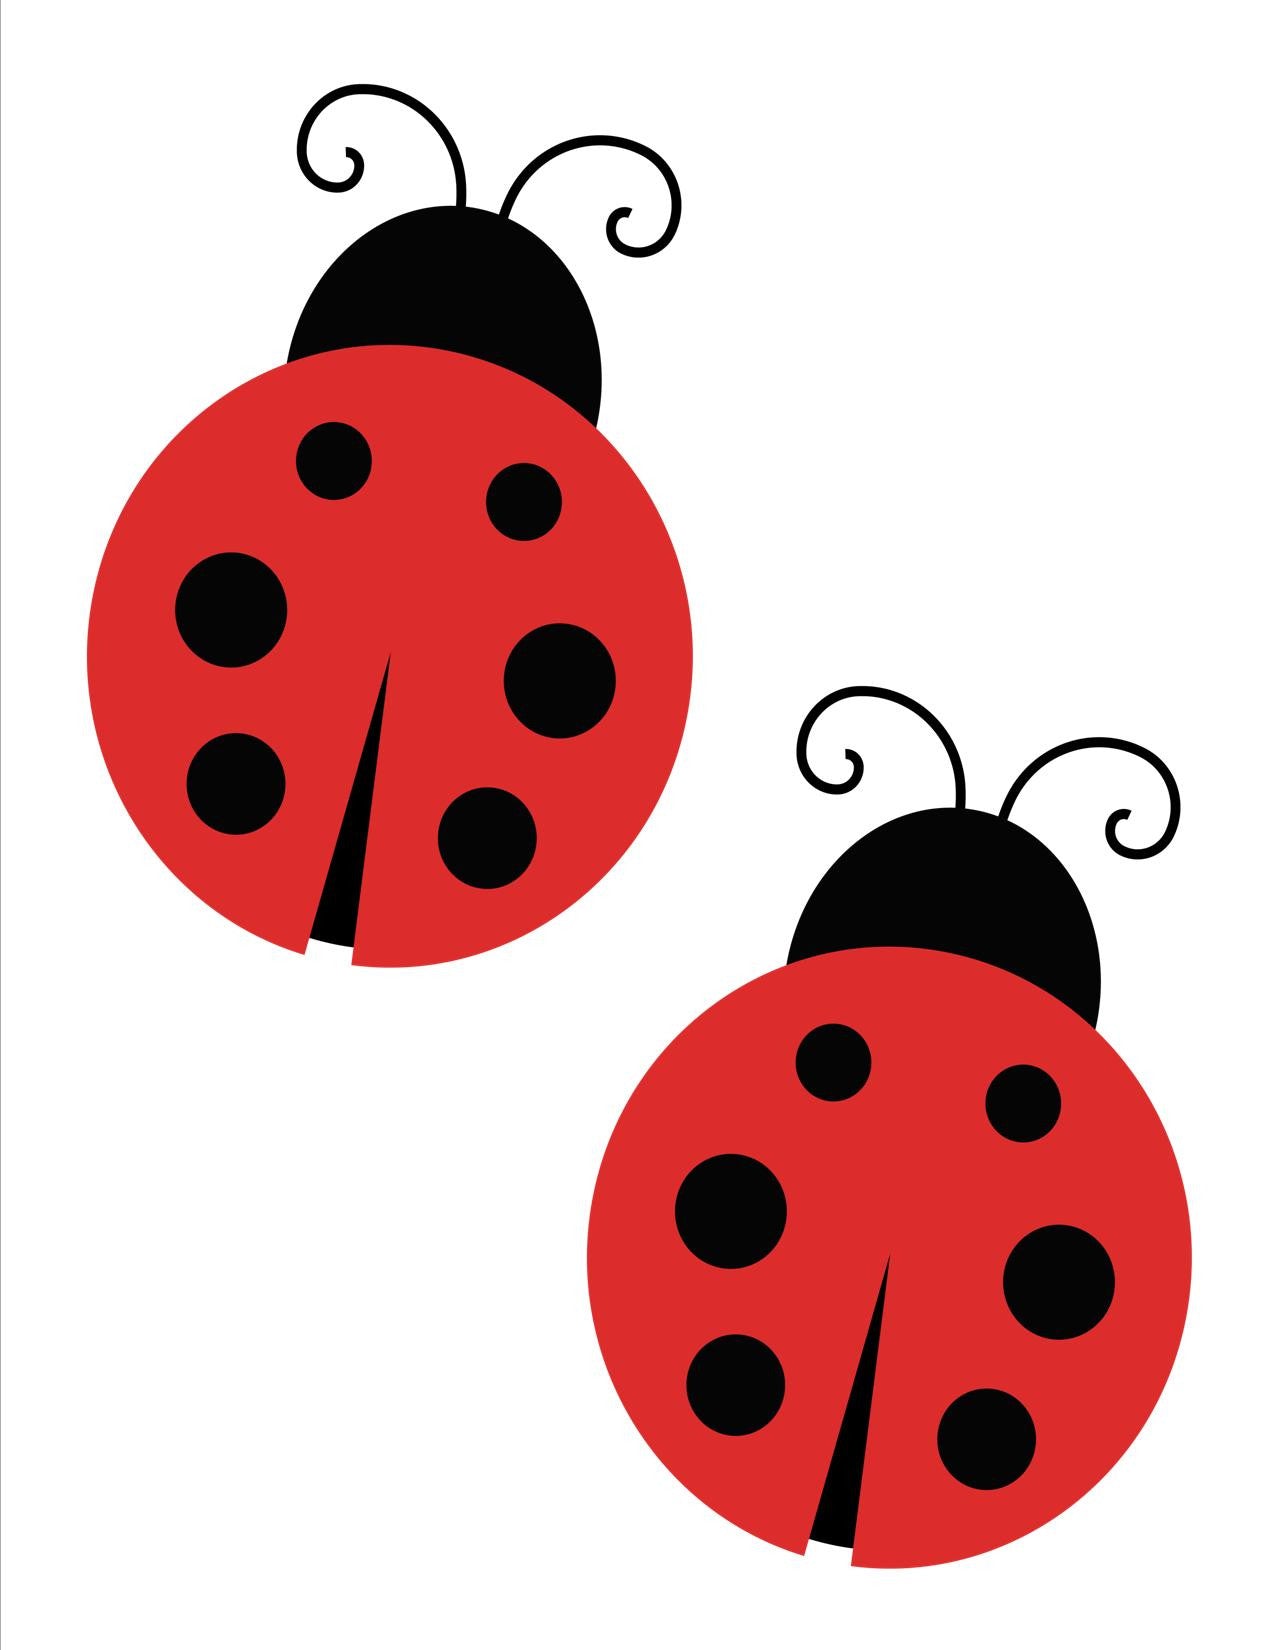 Ladybug from Miraculous Lady Bug Lifesize Cardboard Cutout